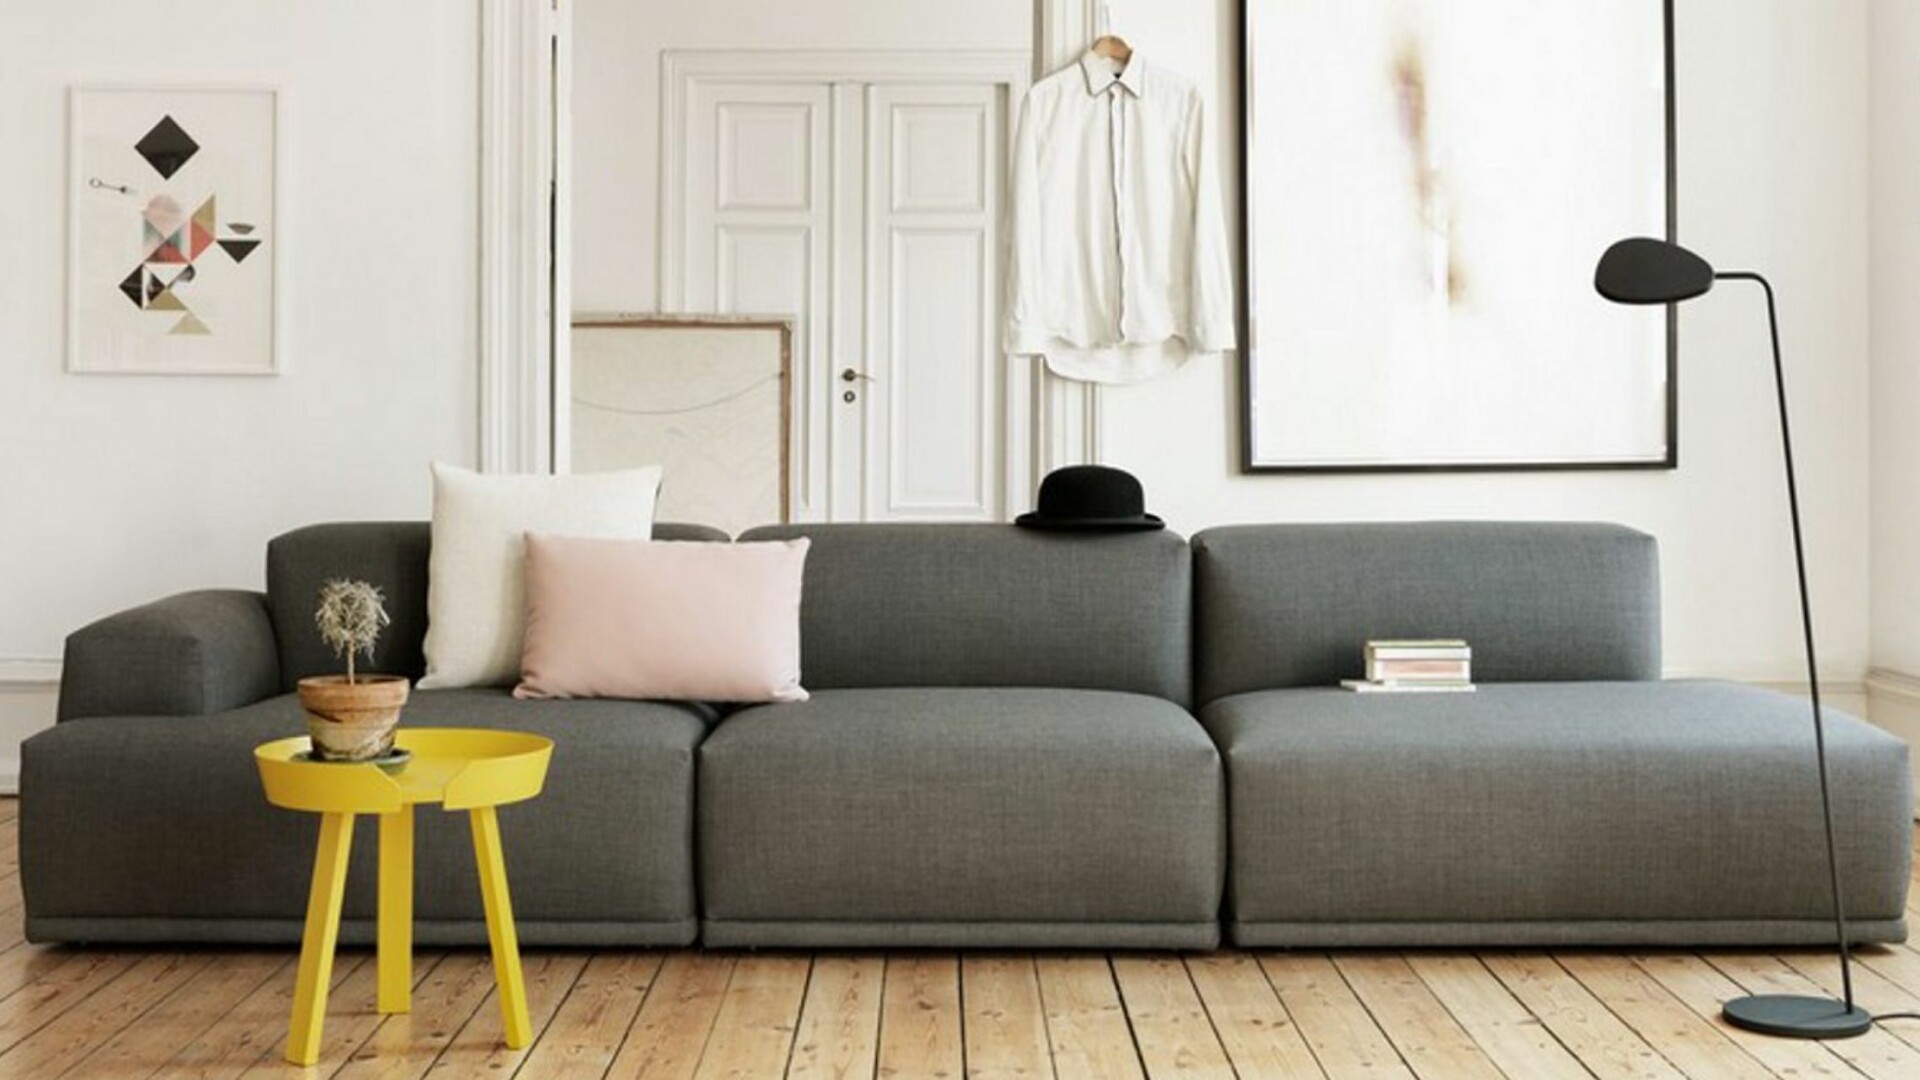 Мебель ала. Диван в скандинавском стиле. Диван Muuto 3 секции ткань. Желтый диван. Самые красивые современные интерьеры.